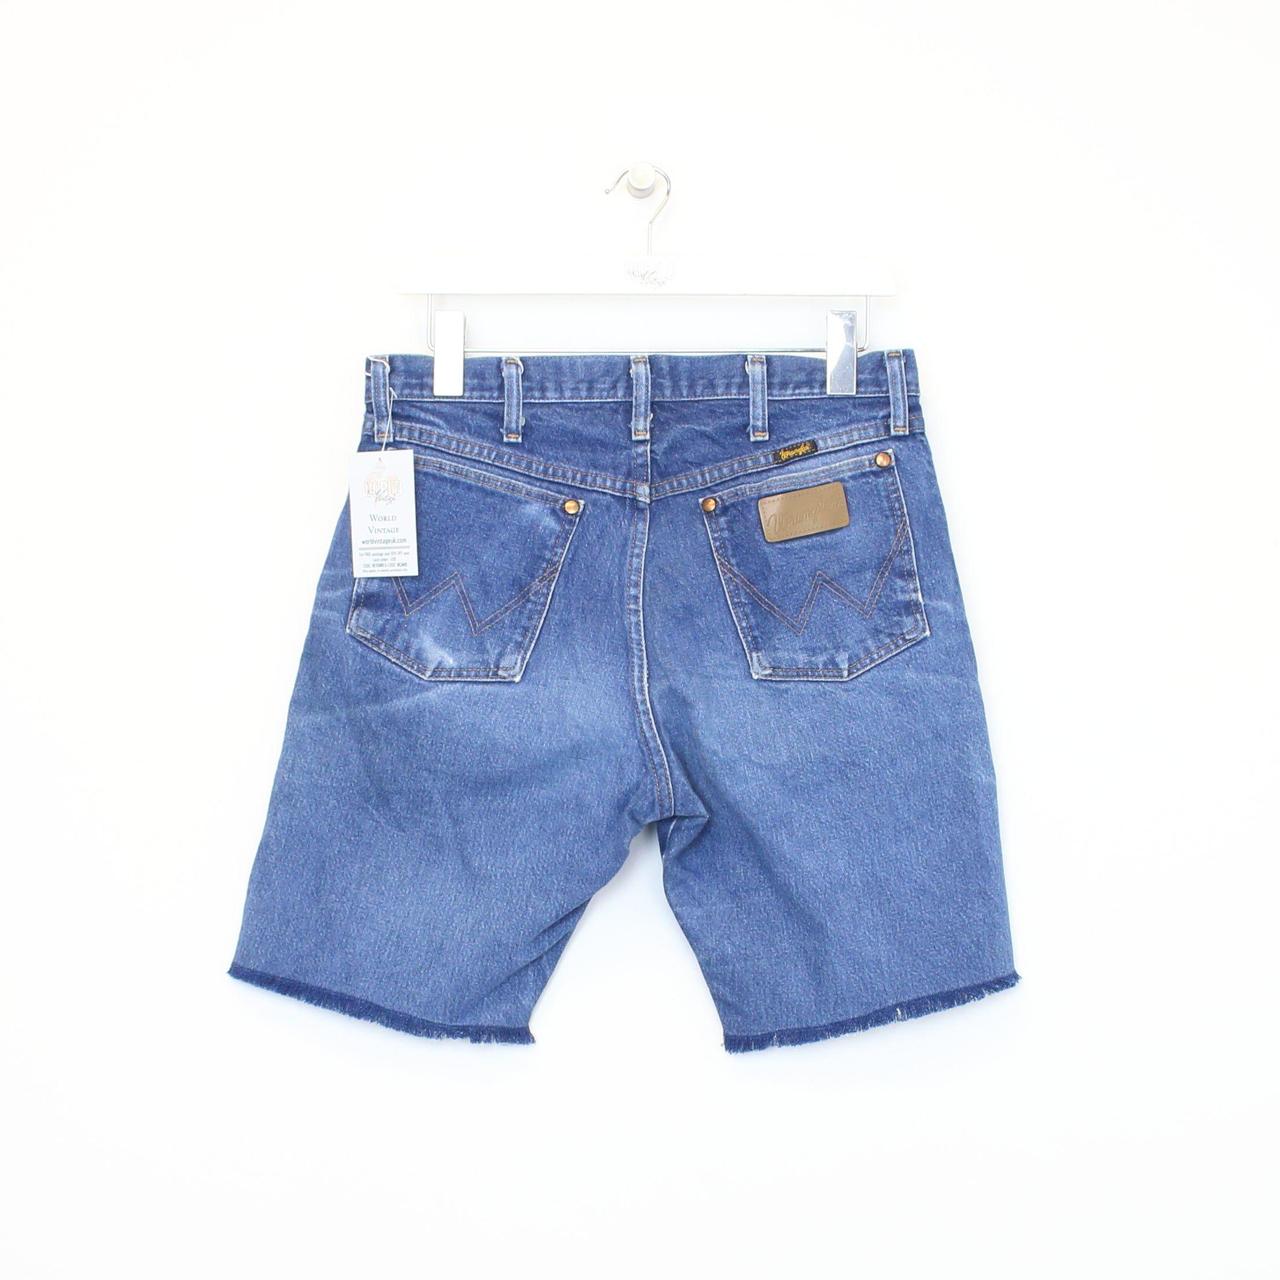 Vintage Wrangler cut off shorts in blue. Best fits... - Depop